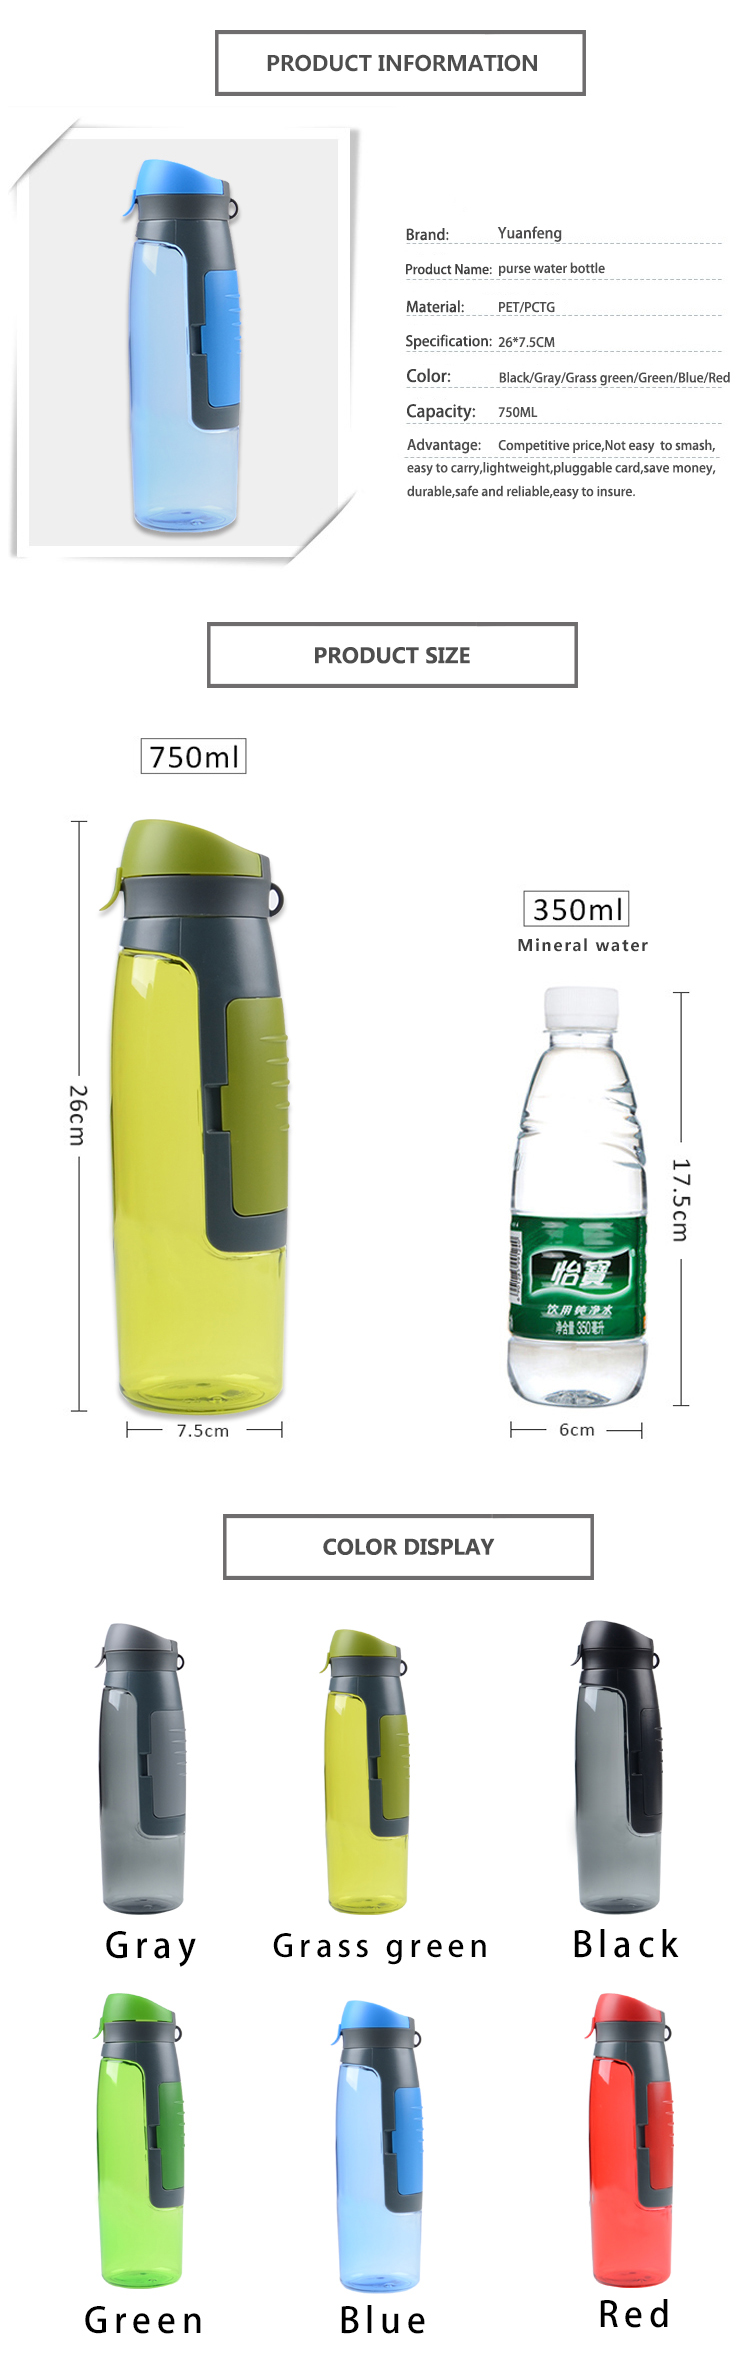 BPA free bottle SH-09 Details 5